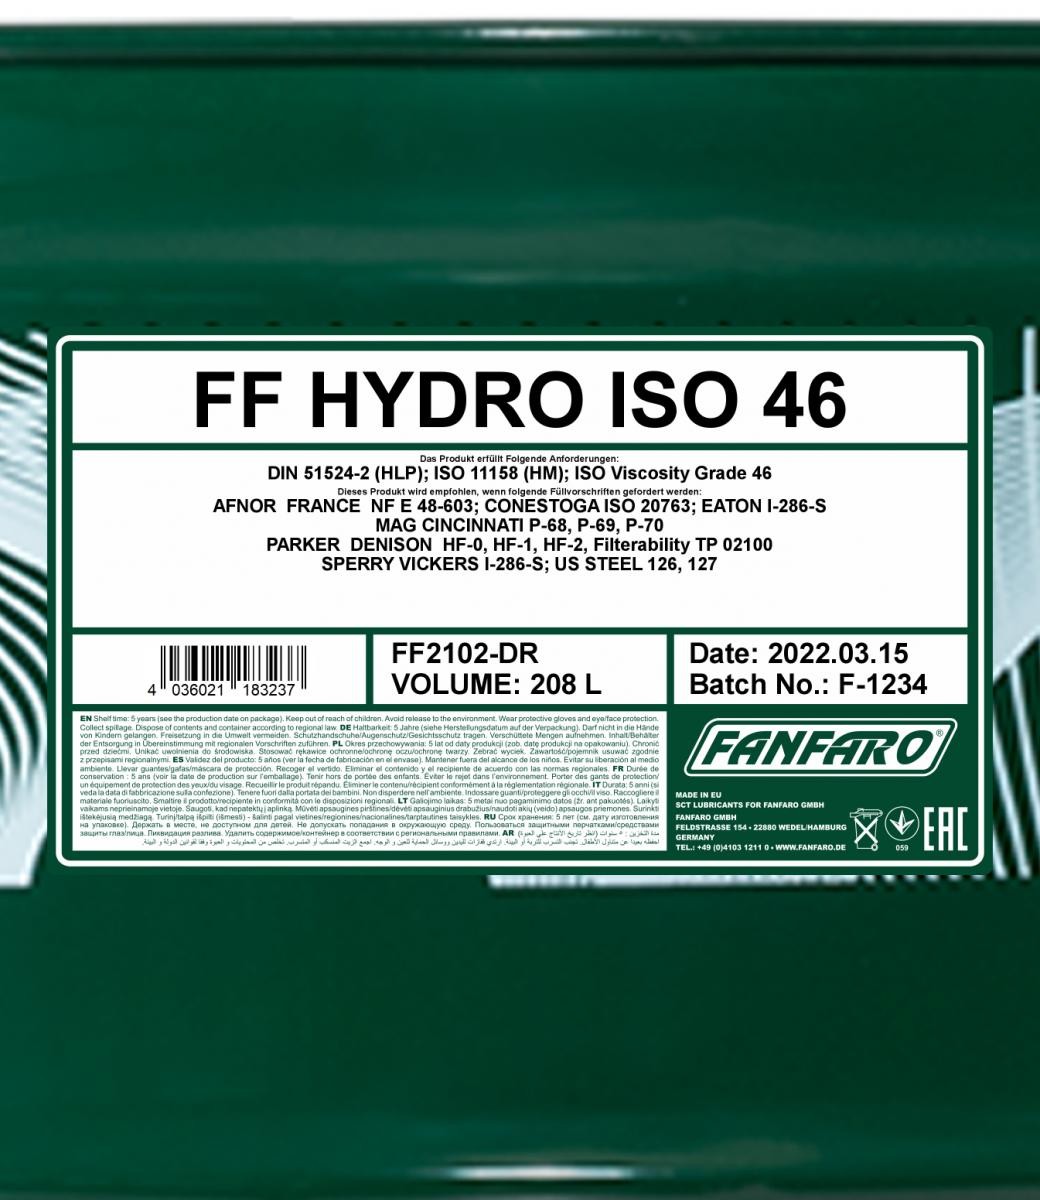 FANFARO Hydrauliköl FF2102-DR